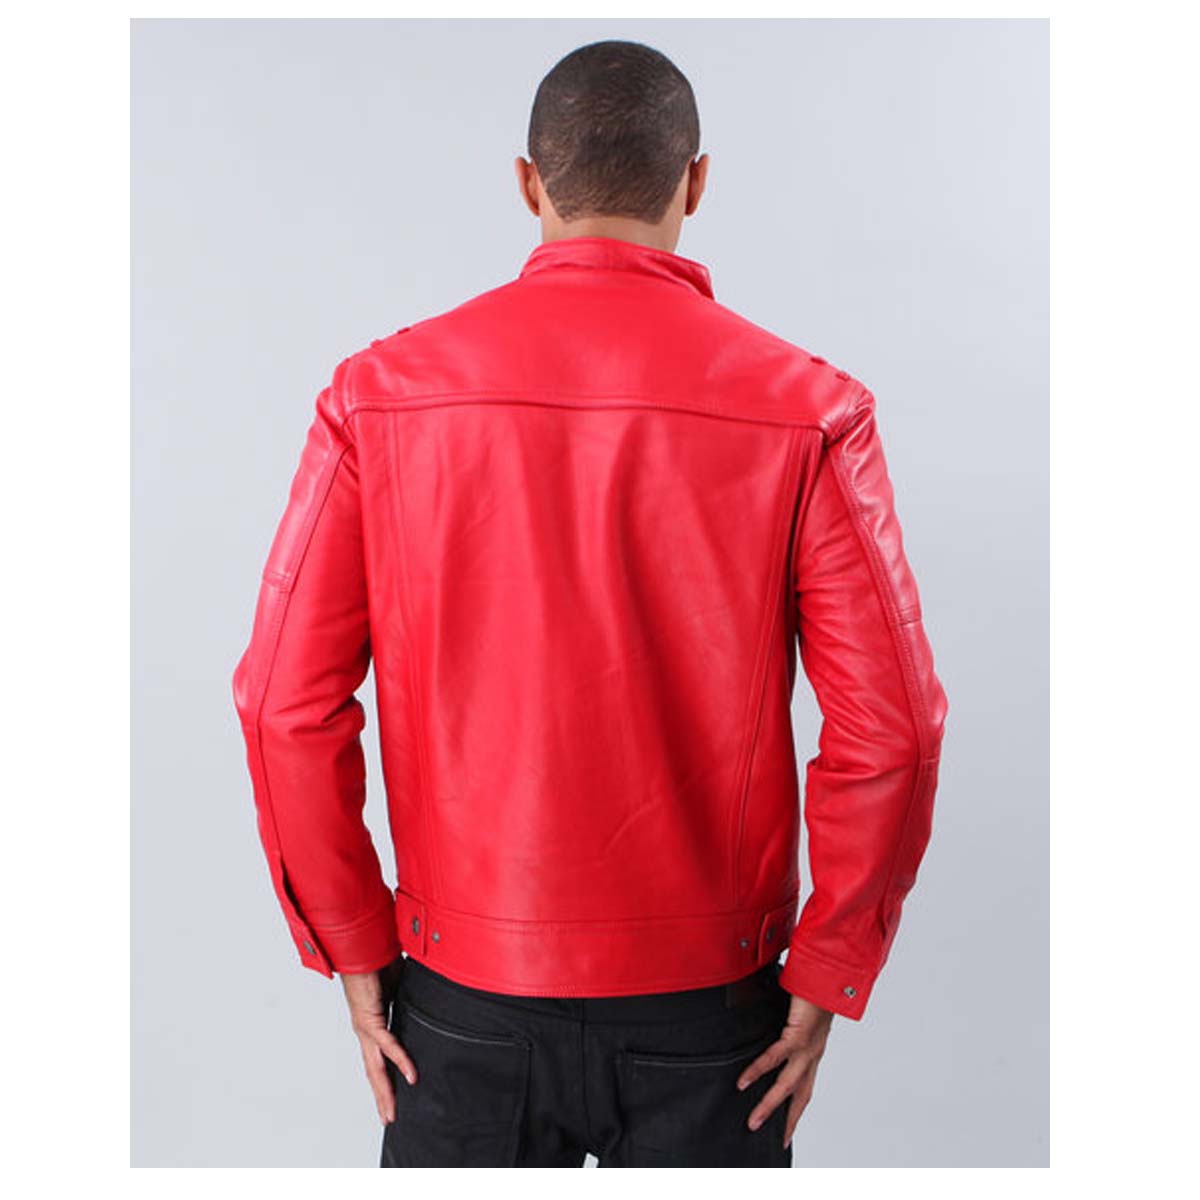 Red Fashion Leather Jacket | Designer Premium Leather Jacket